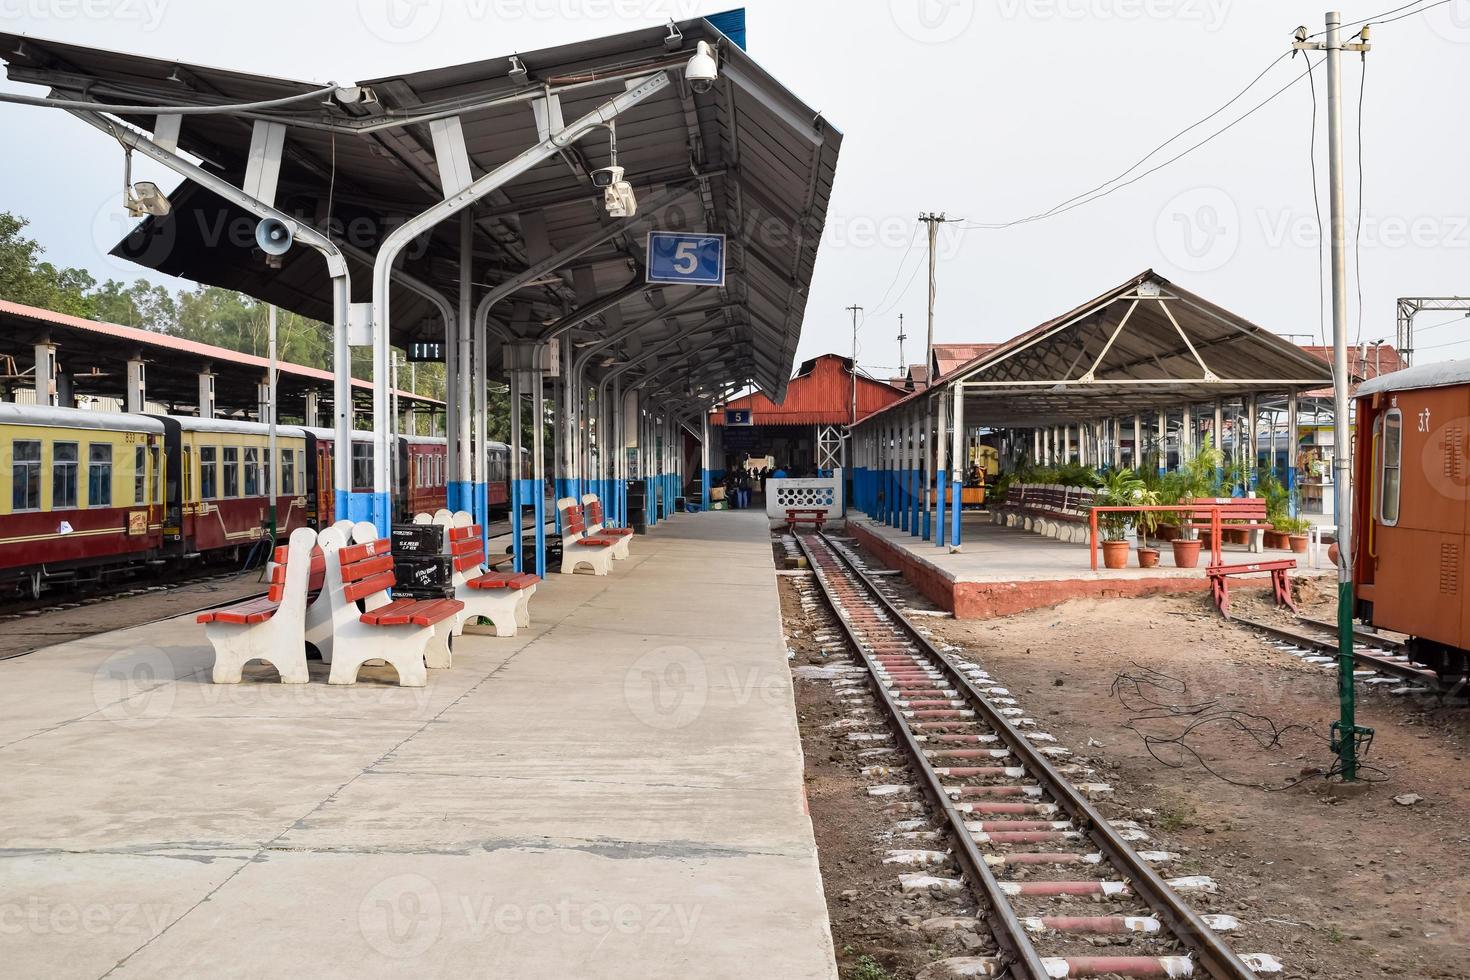 vue sur les voies ferrées du train jouet depuis le milieu pendant la journée près de la gare de kalka en inde, vue sur la voie du train jouet, jonction ferroviaire indienne, industrie lourde photo